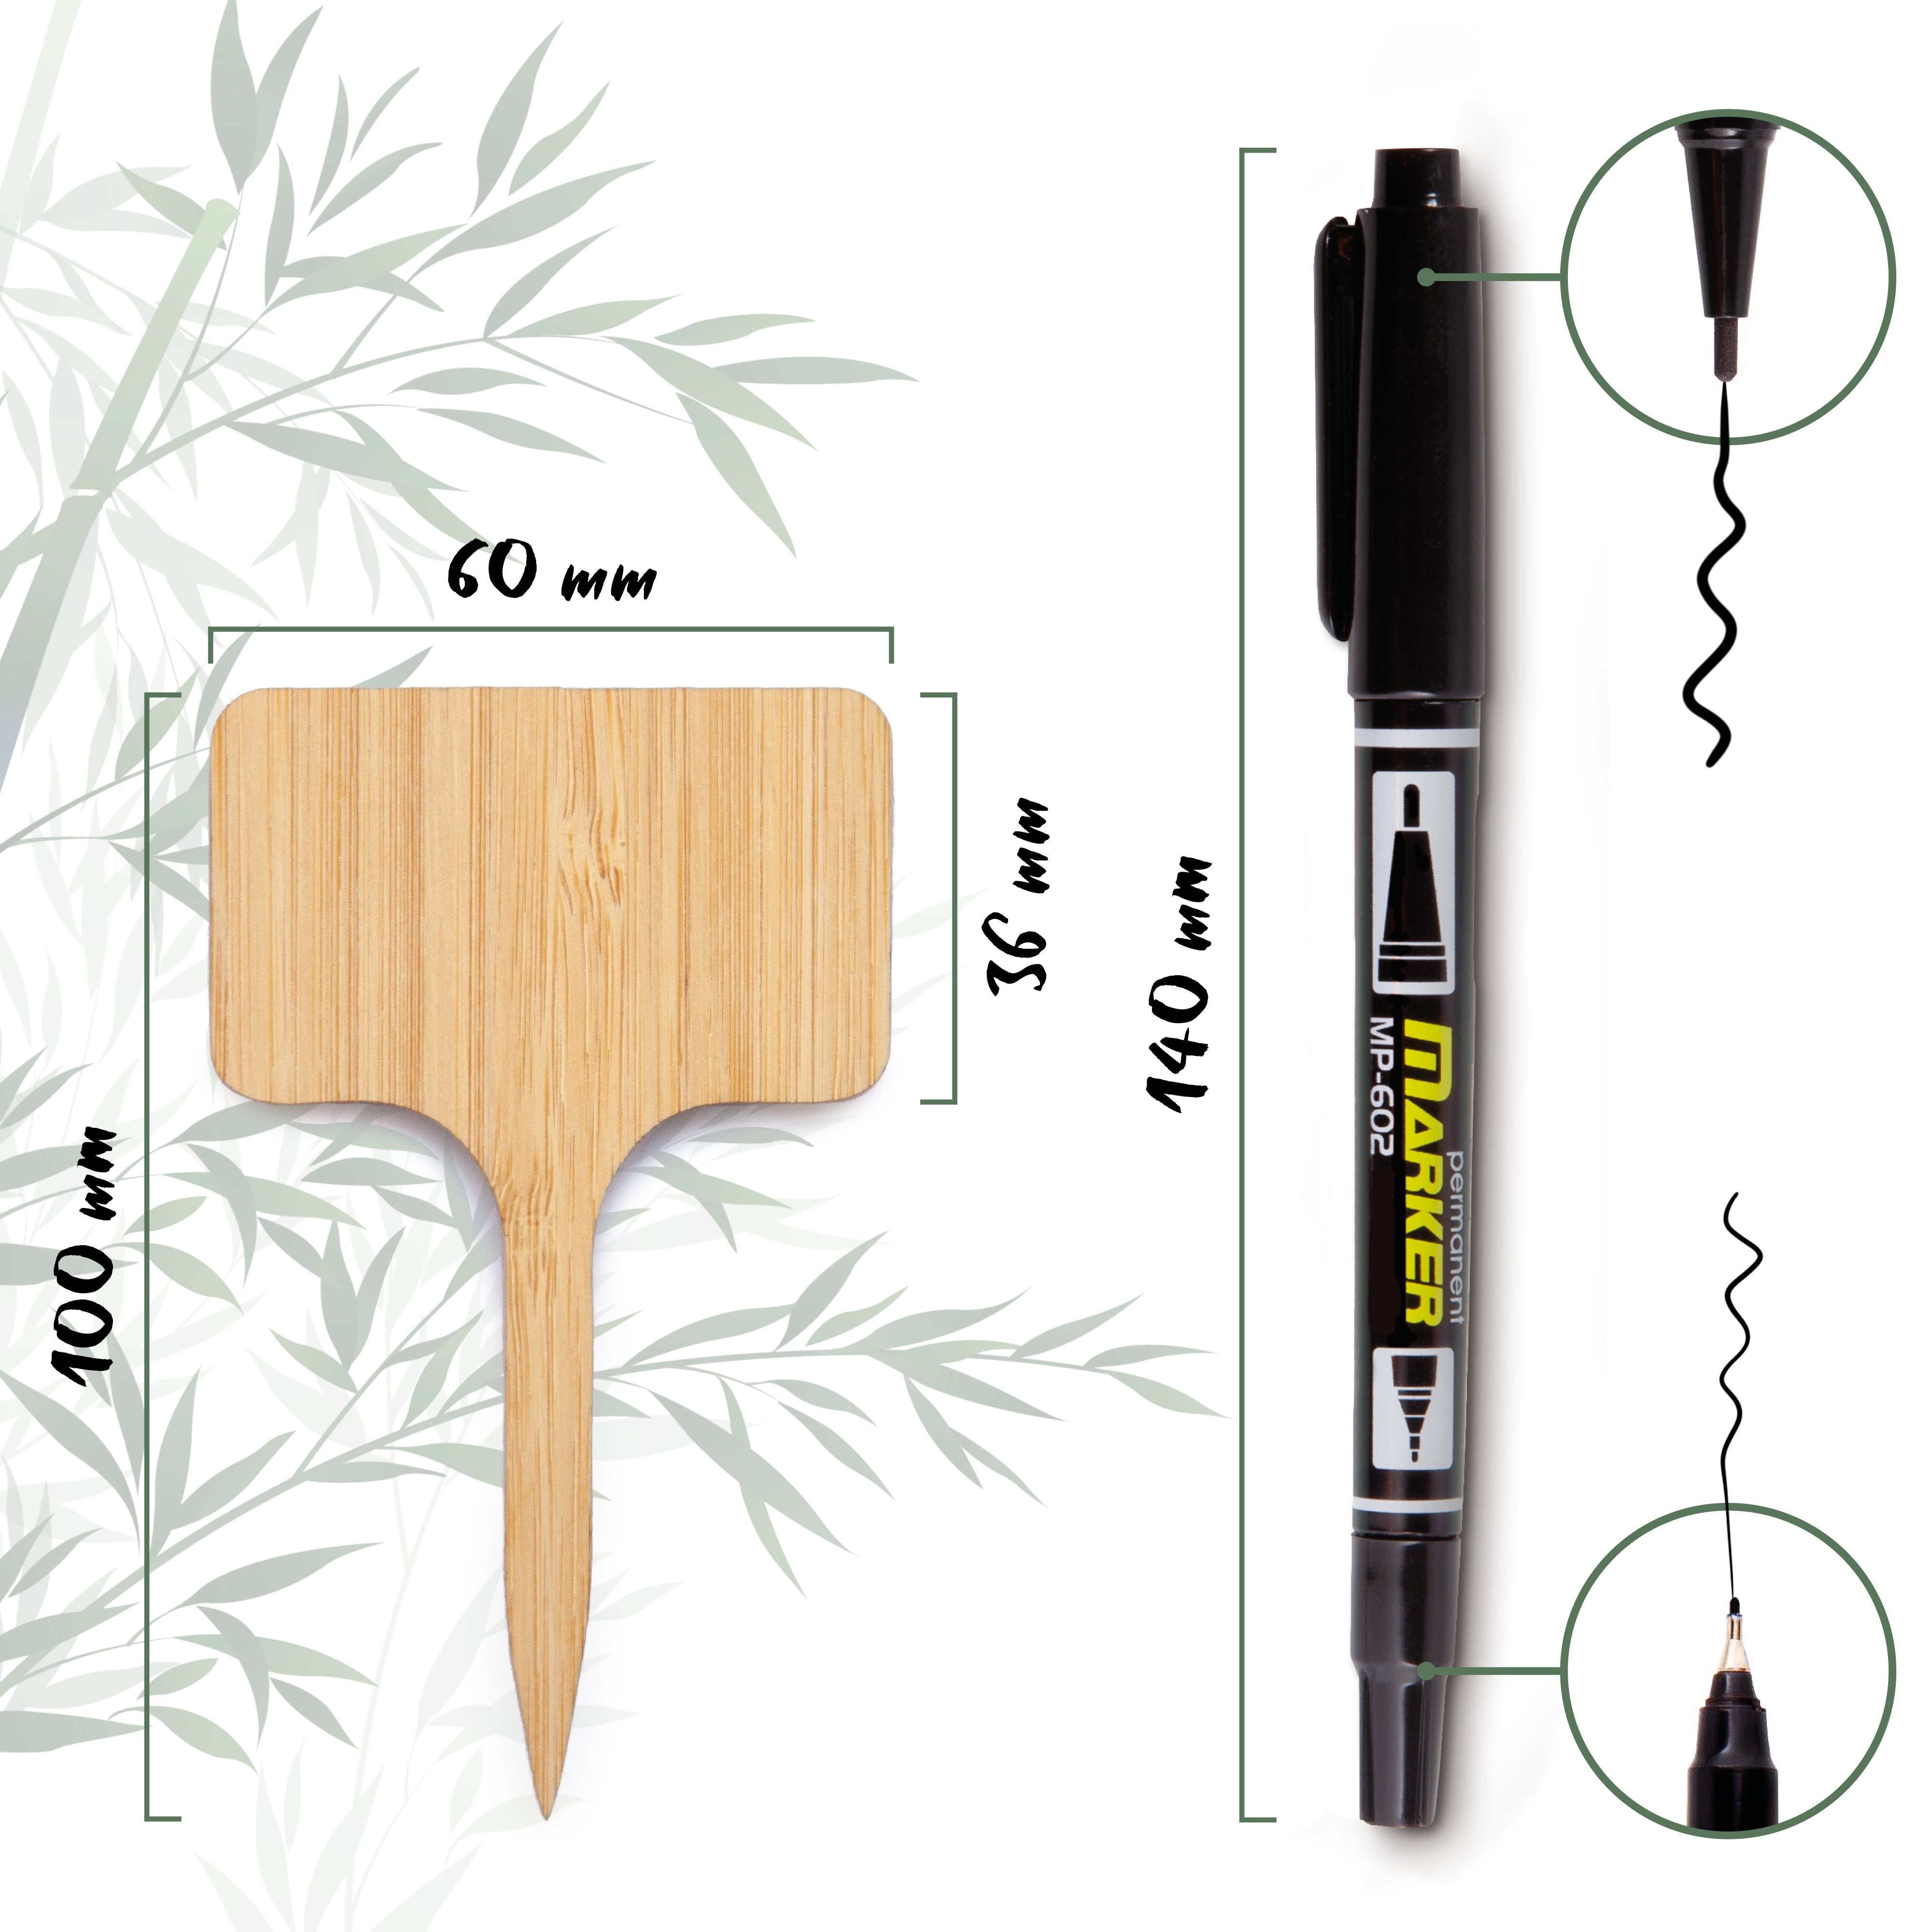 30x Pflanzenstecker zum Beschriften aus Bambus inklusive Marker - Umweltfreundliche Pflanzenschilder für Anzuchttöpfe, Keimlinge und Stecklinge